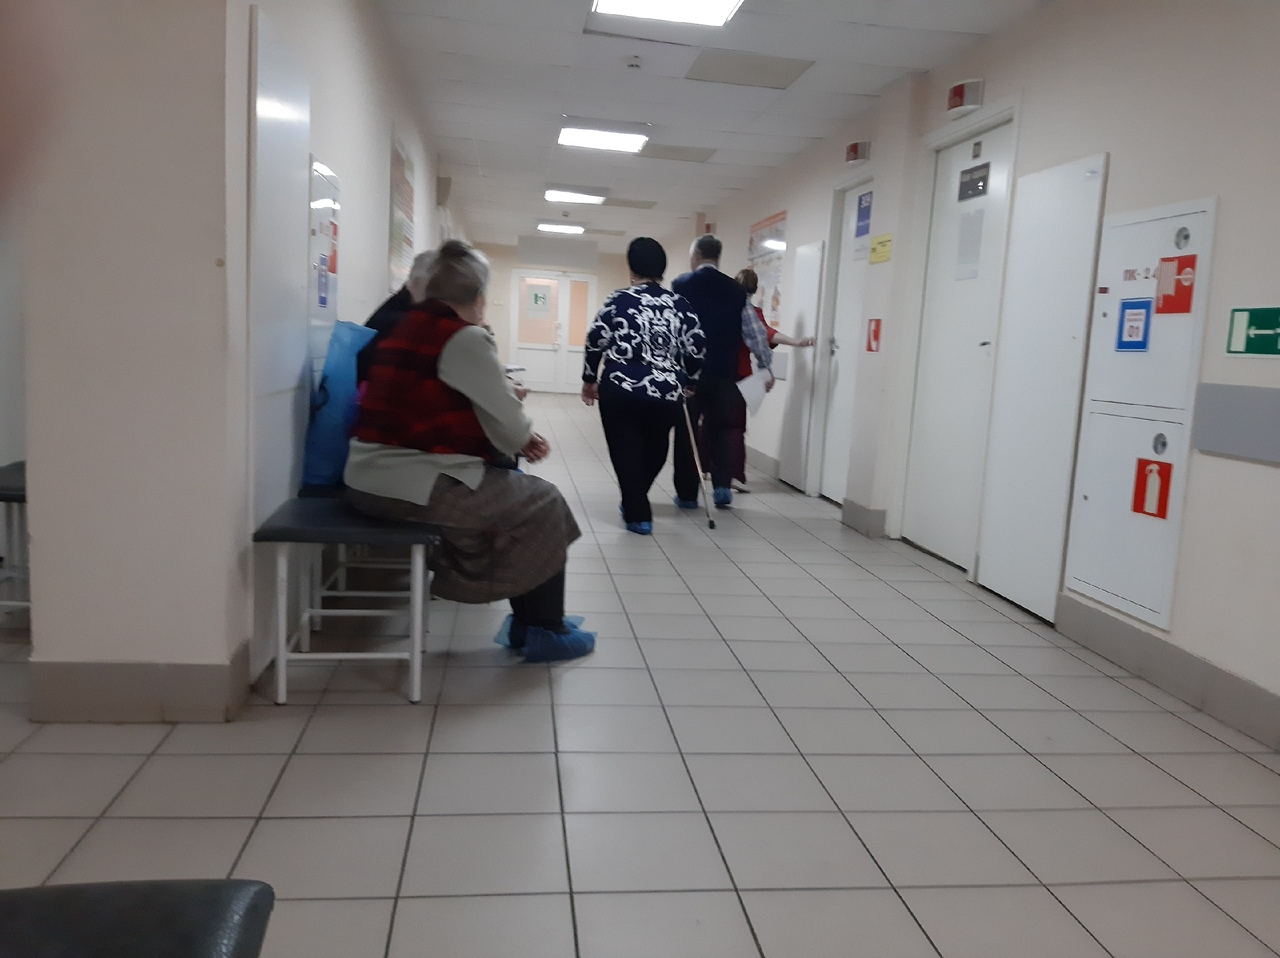 Коронавирус наступает на Ярославль: пациентку с подозрением на страшную болезнь привезли в больницу